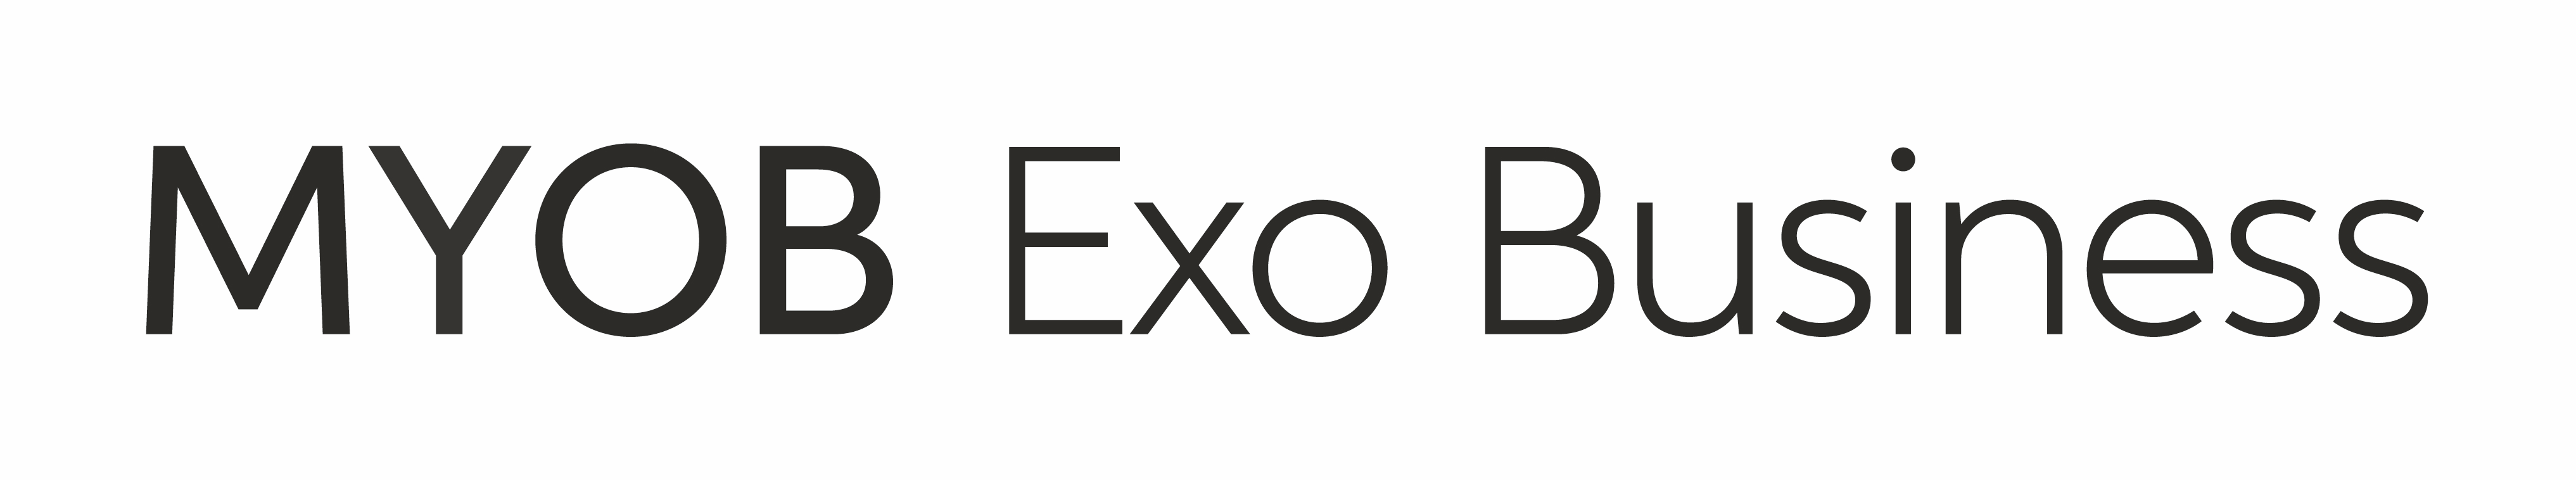 MYOB Exo Business